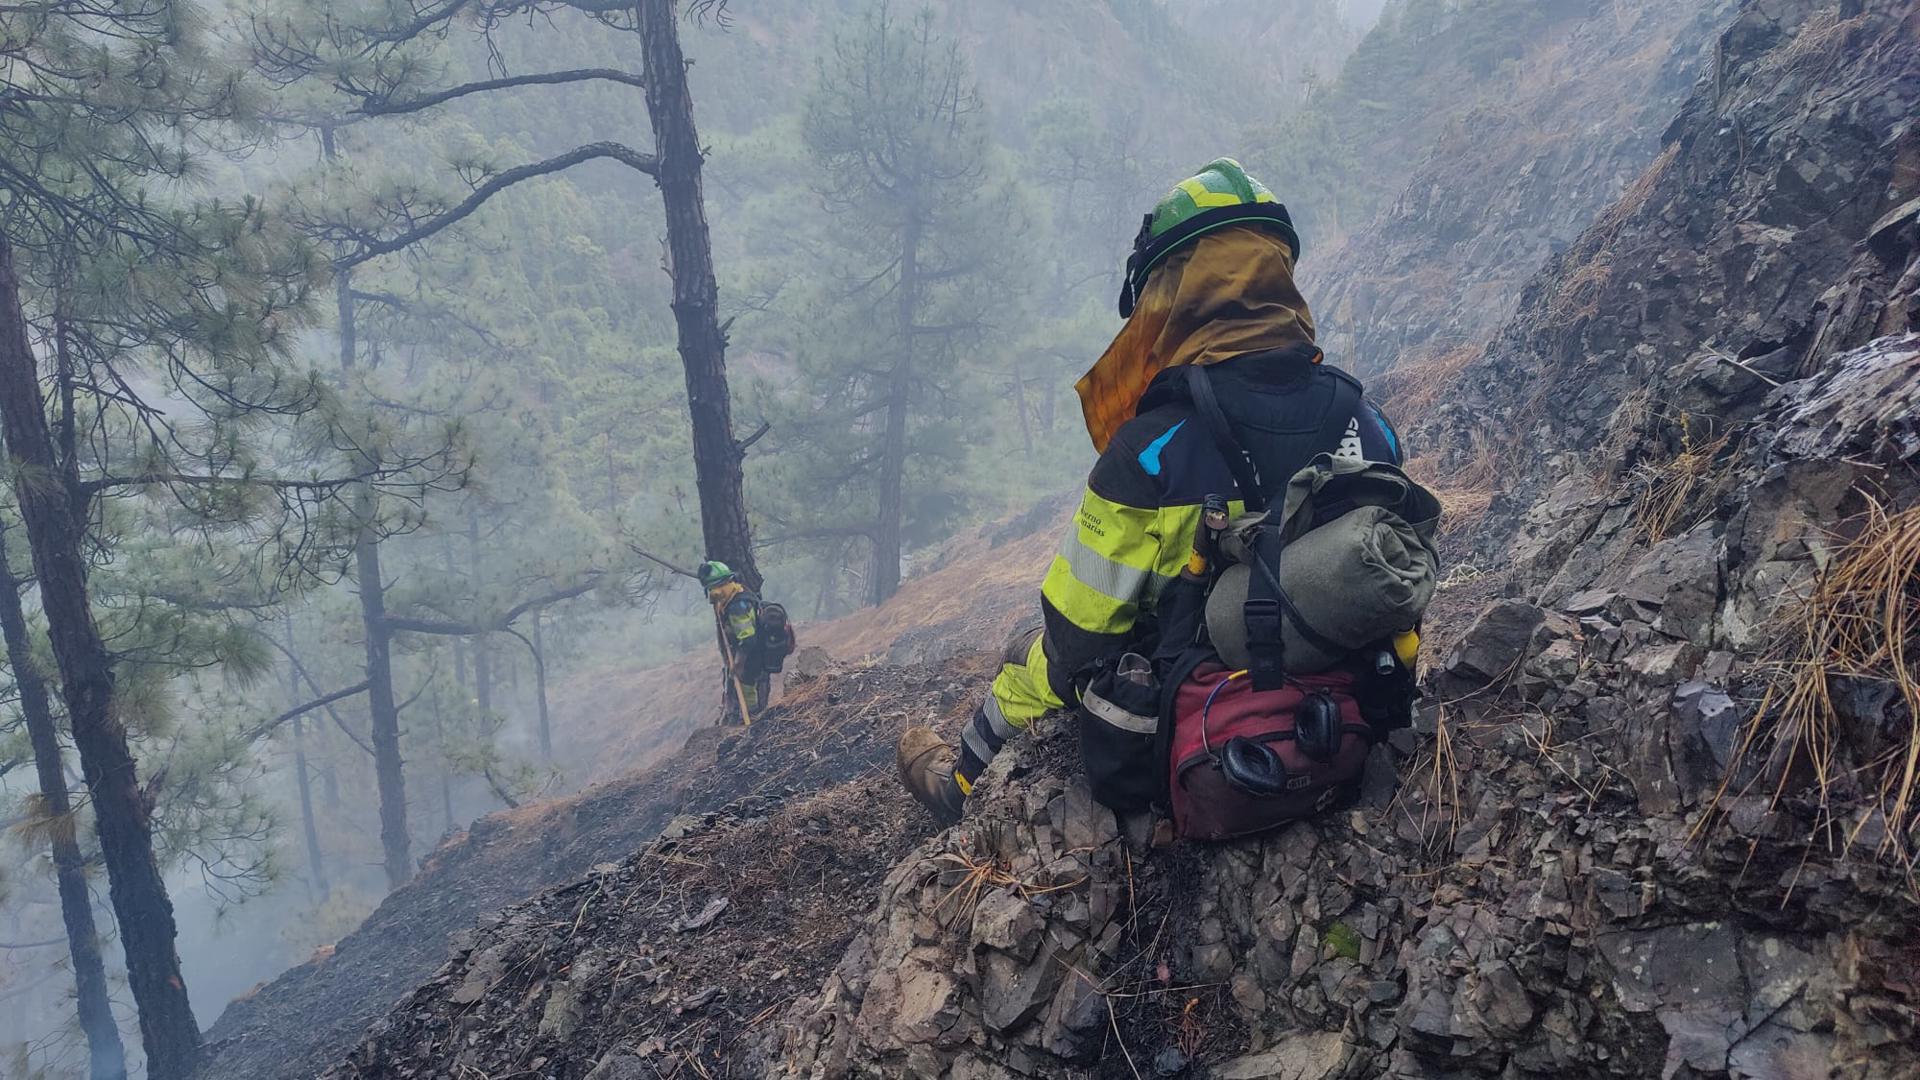 Imágenes difundidas por el Gobierno de Canarias de sus equipos de intervención rápida ante incendios forestales combatiendo el conato declarado en el Parque Nacional de la Caldera de Taburiente, en La Palma. EFE/Gobierno de Canarias